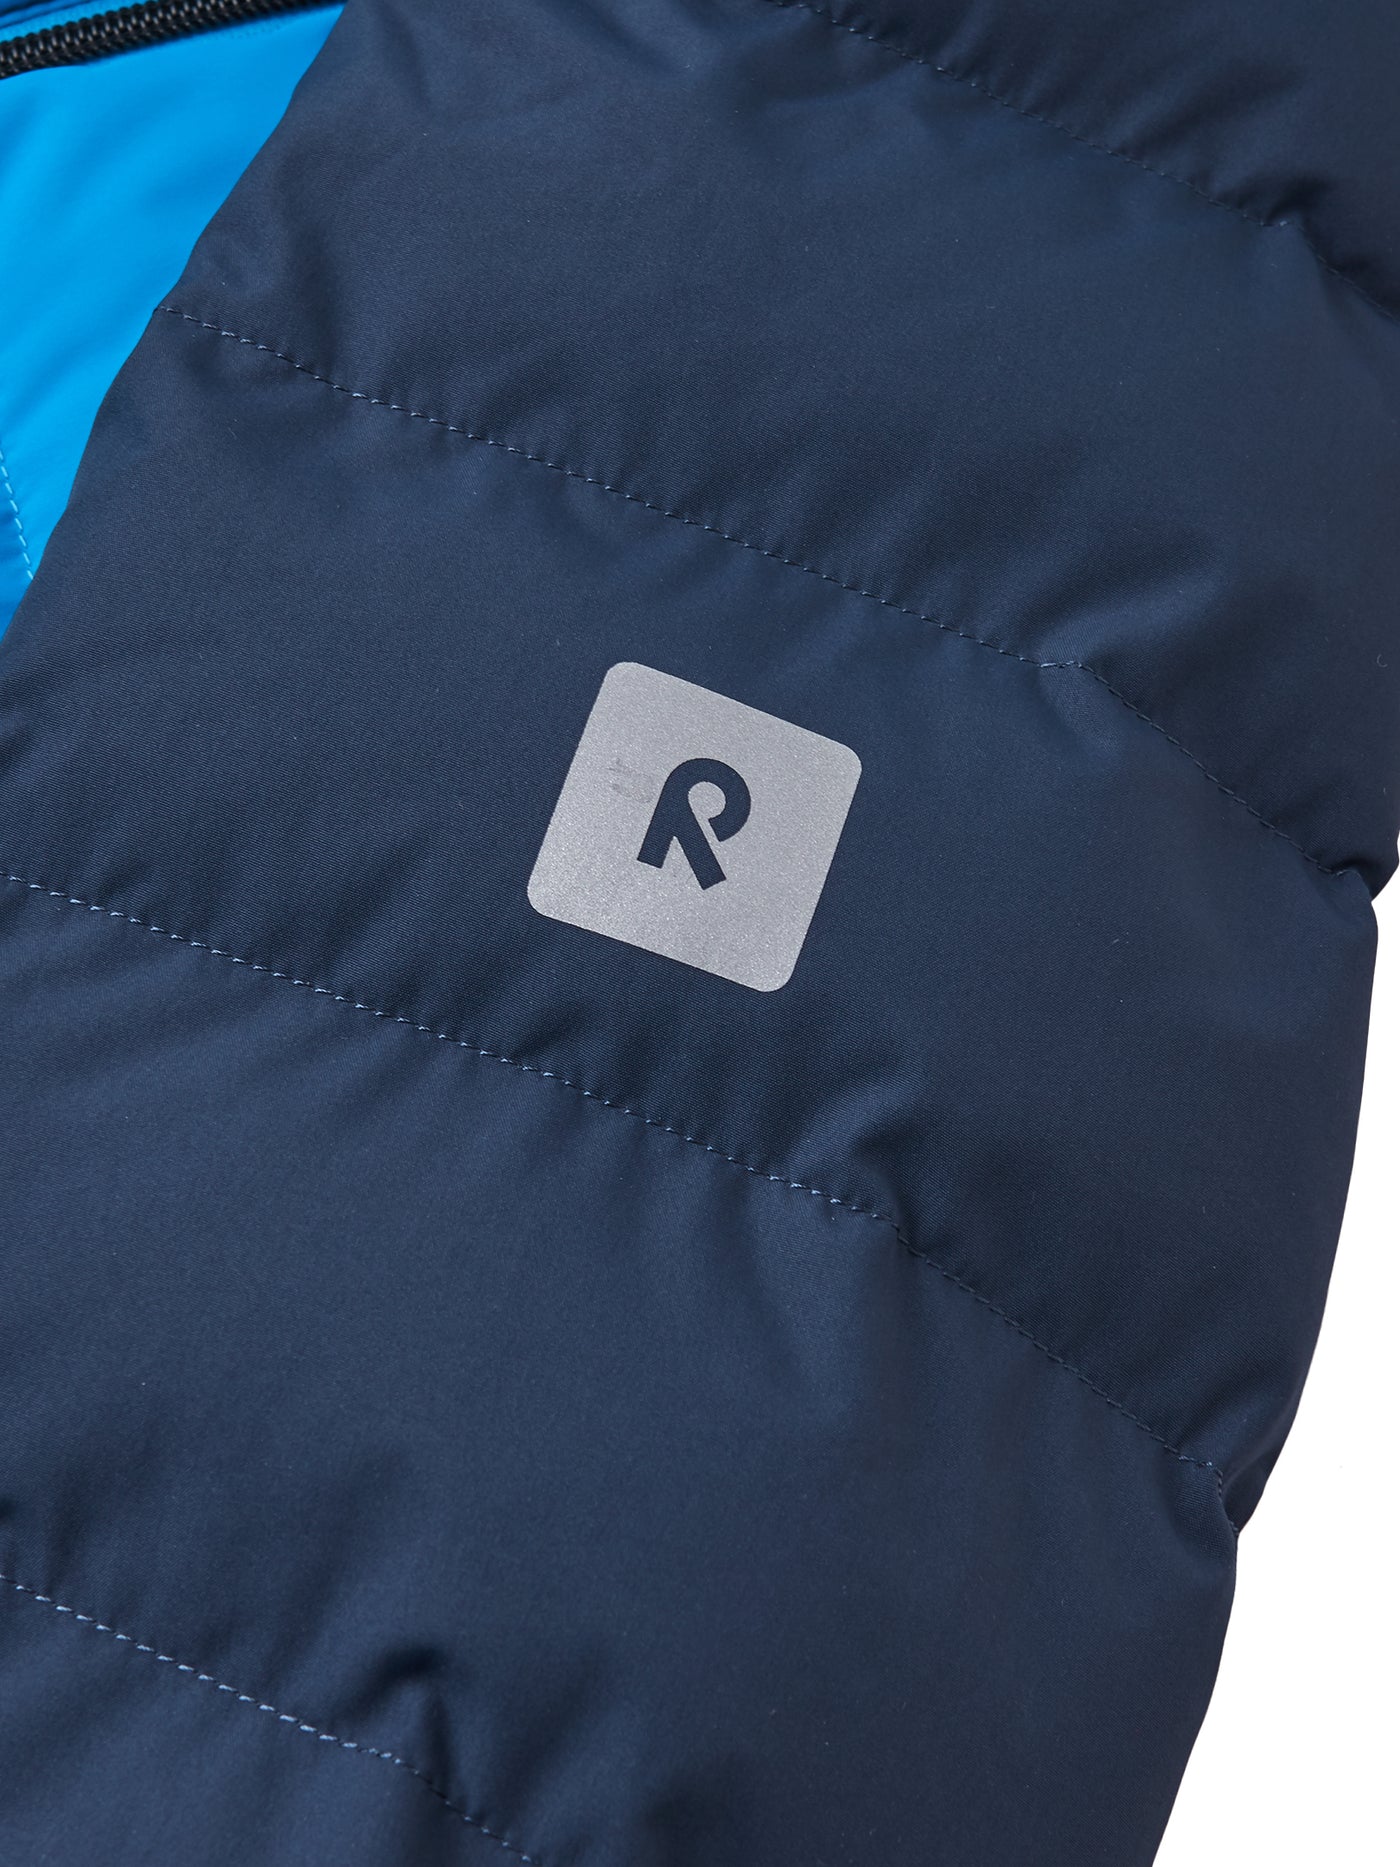 Reima Kuosku sininen laskettelutakki lähikuva hihan R-logosta